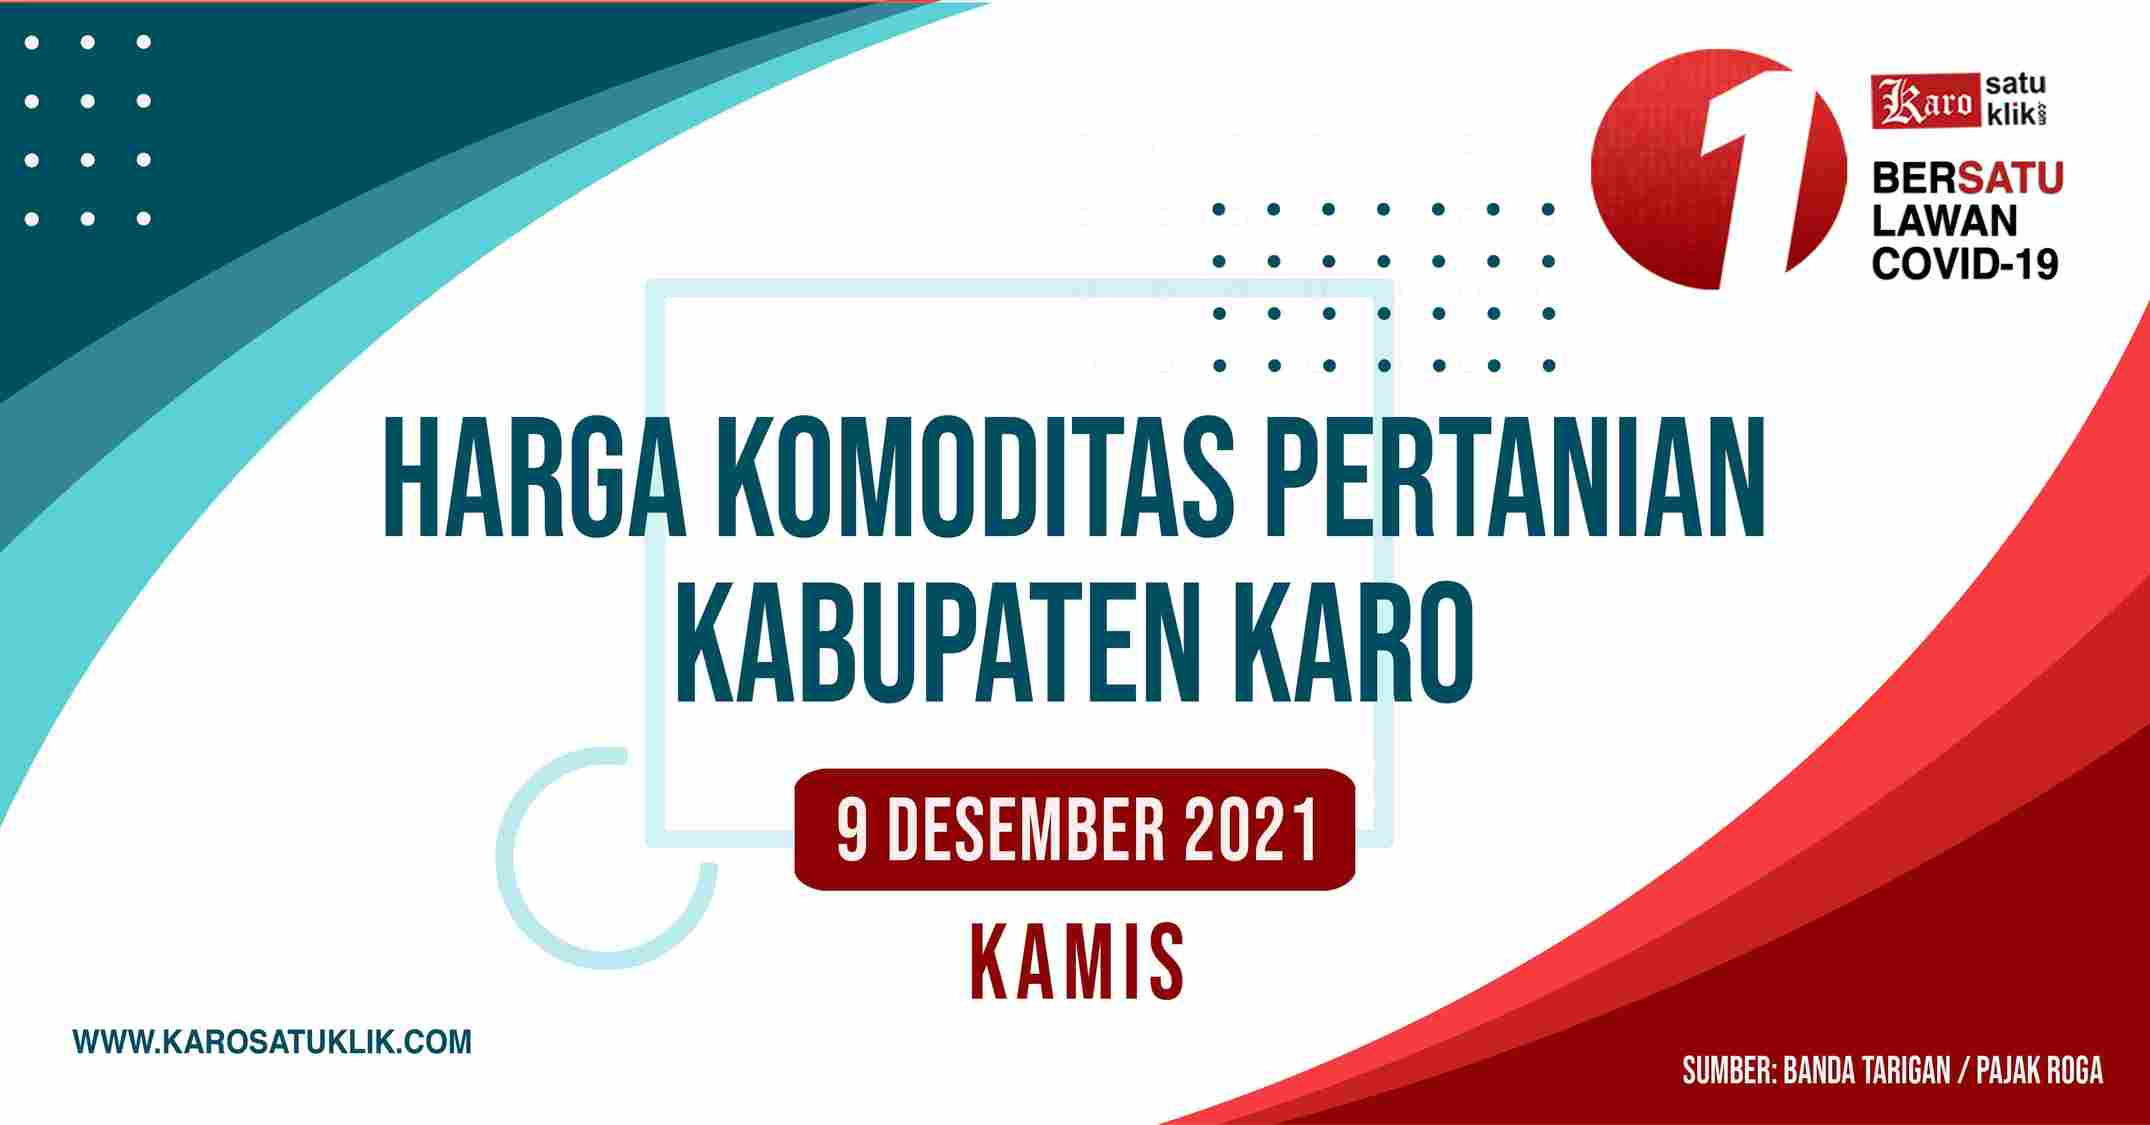 Daftar Harga Komoditas Pertanian Kabupaten Karo, 9 Desember 2021